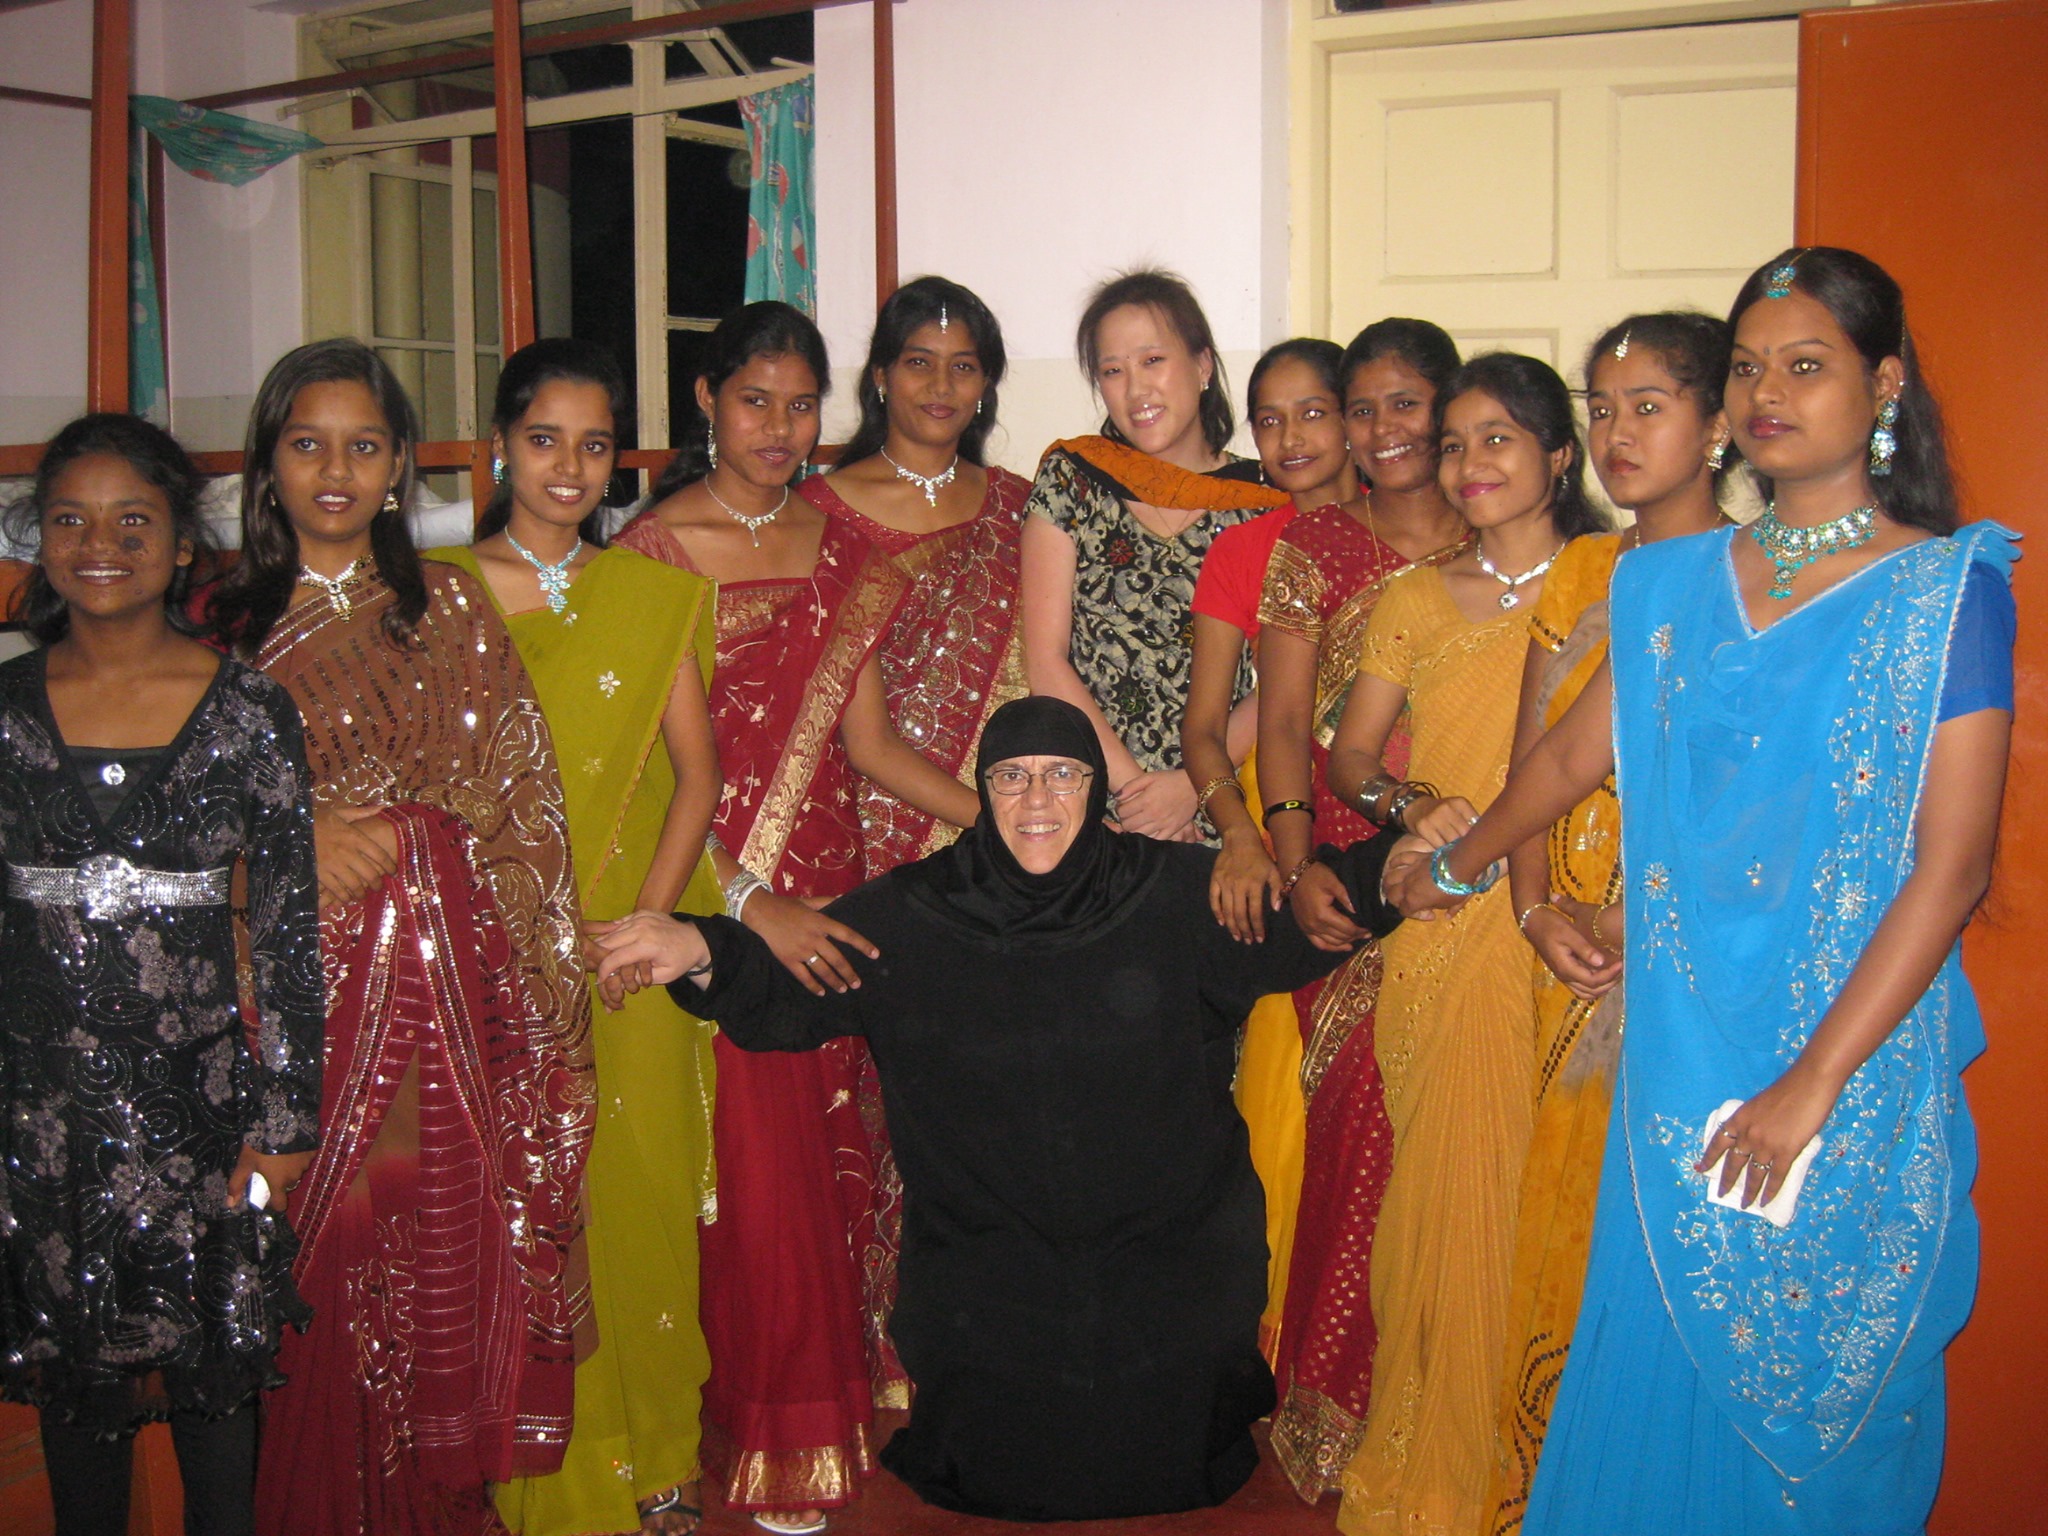 Aπό τη Μονή Οσίου Παταπίου στο Λουτράκι, η αδελφή Νεκταρία ως μοναχή-σύμβολο στη μάχη κατά της φτώχειας στην Ινδία - ΕΚΚΛΗΣΙΑ